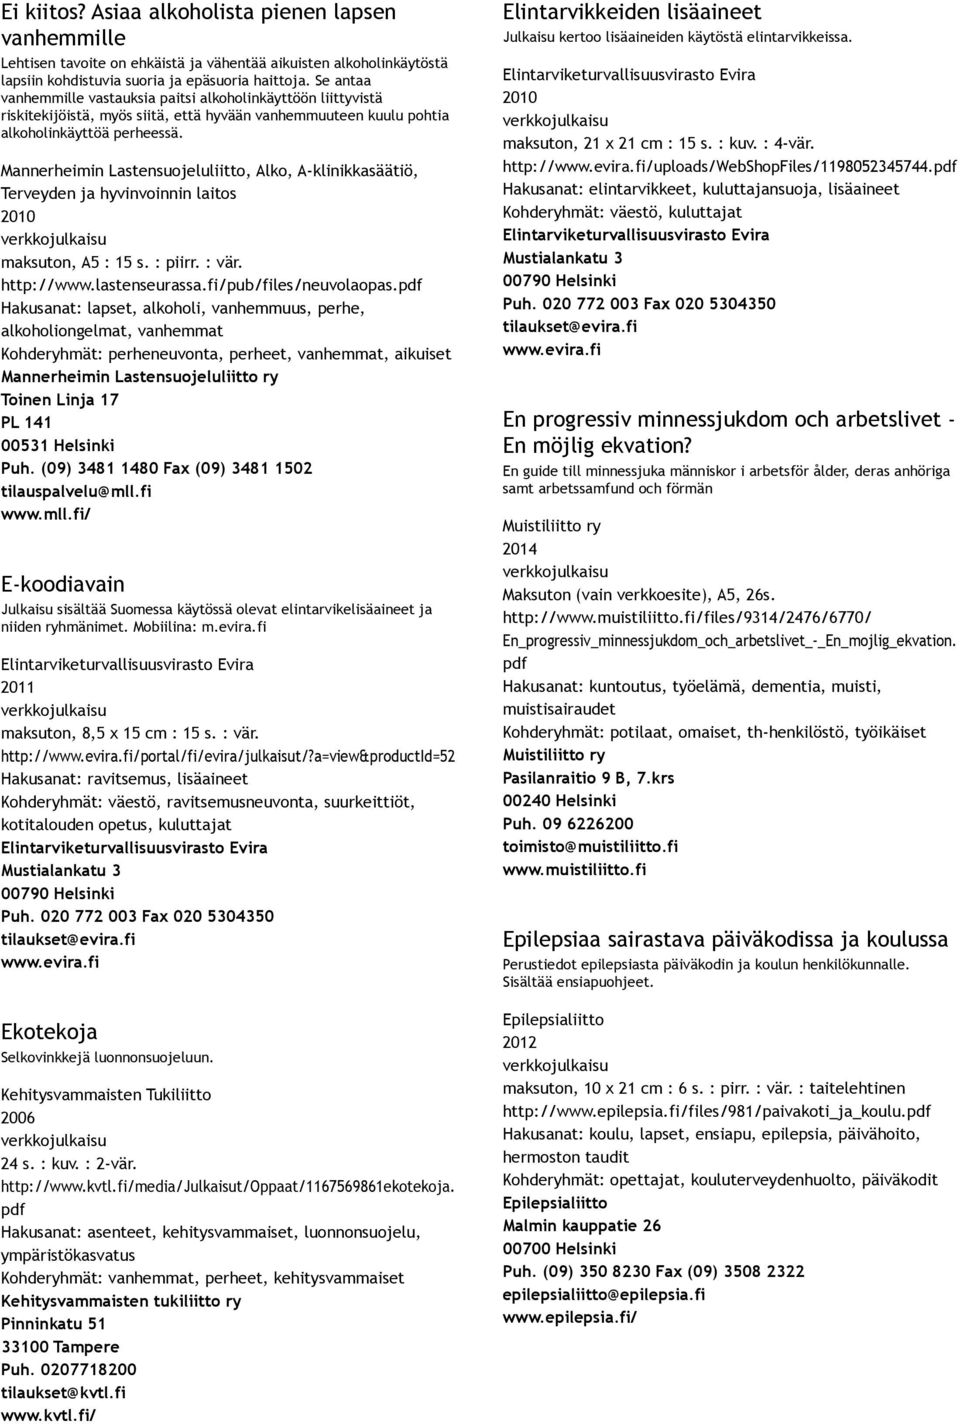 Mannerheimin Lastensuojeluliitto, Alko, A klinikkasäätiö, Terveyden ja hyvinvoinnin laitos, A5 : 15 s. : piirr. : vär. http://www.lastenseurassa.fi/pub/files/neuvolaopas.